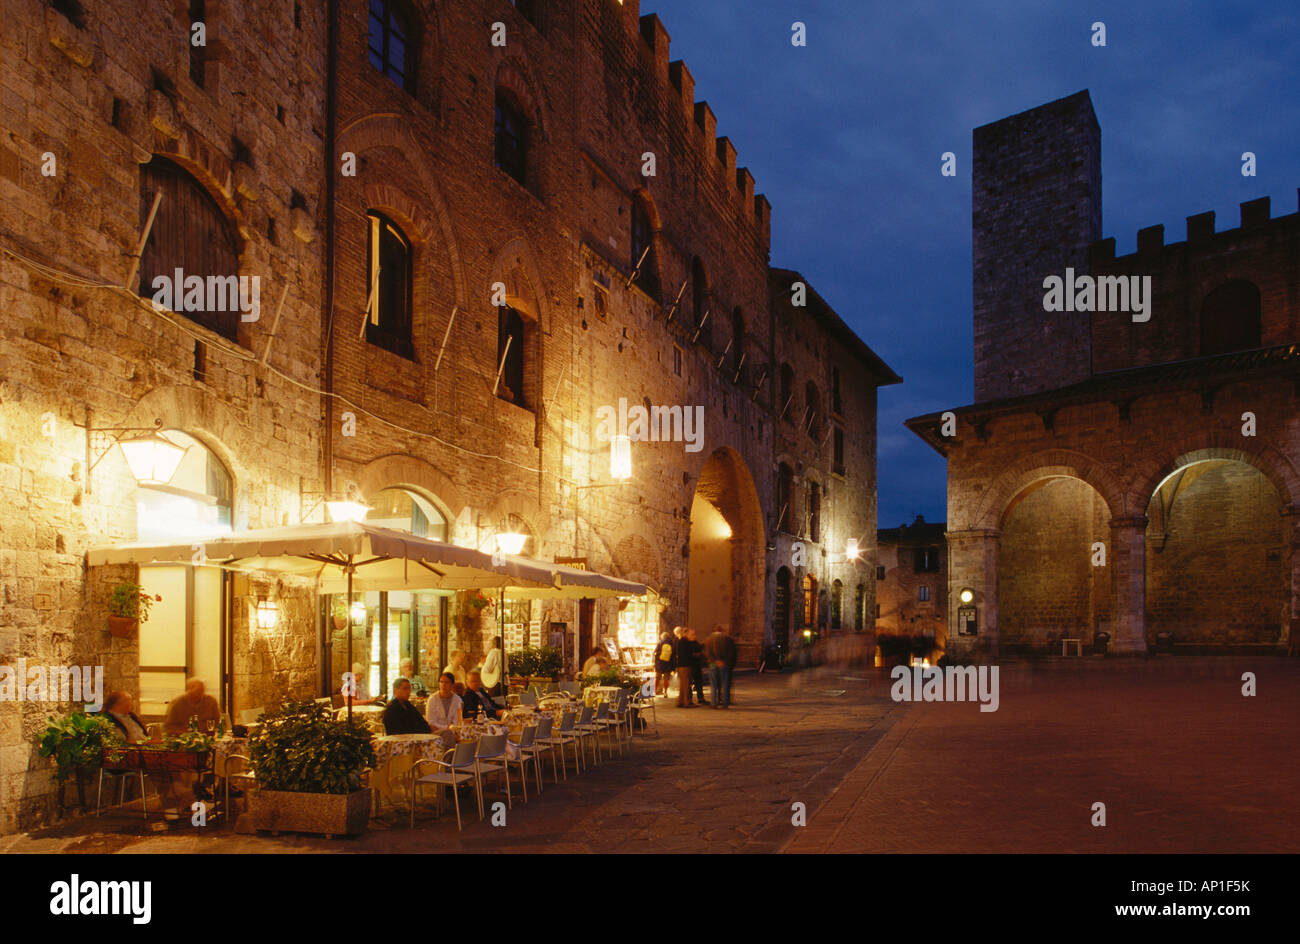 Sidewalk Café, Piazza Duomo, San Gimignano, Tuscany, Italy Stock Photo